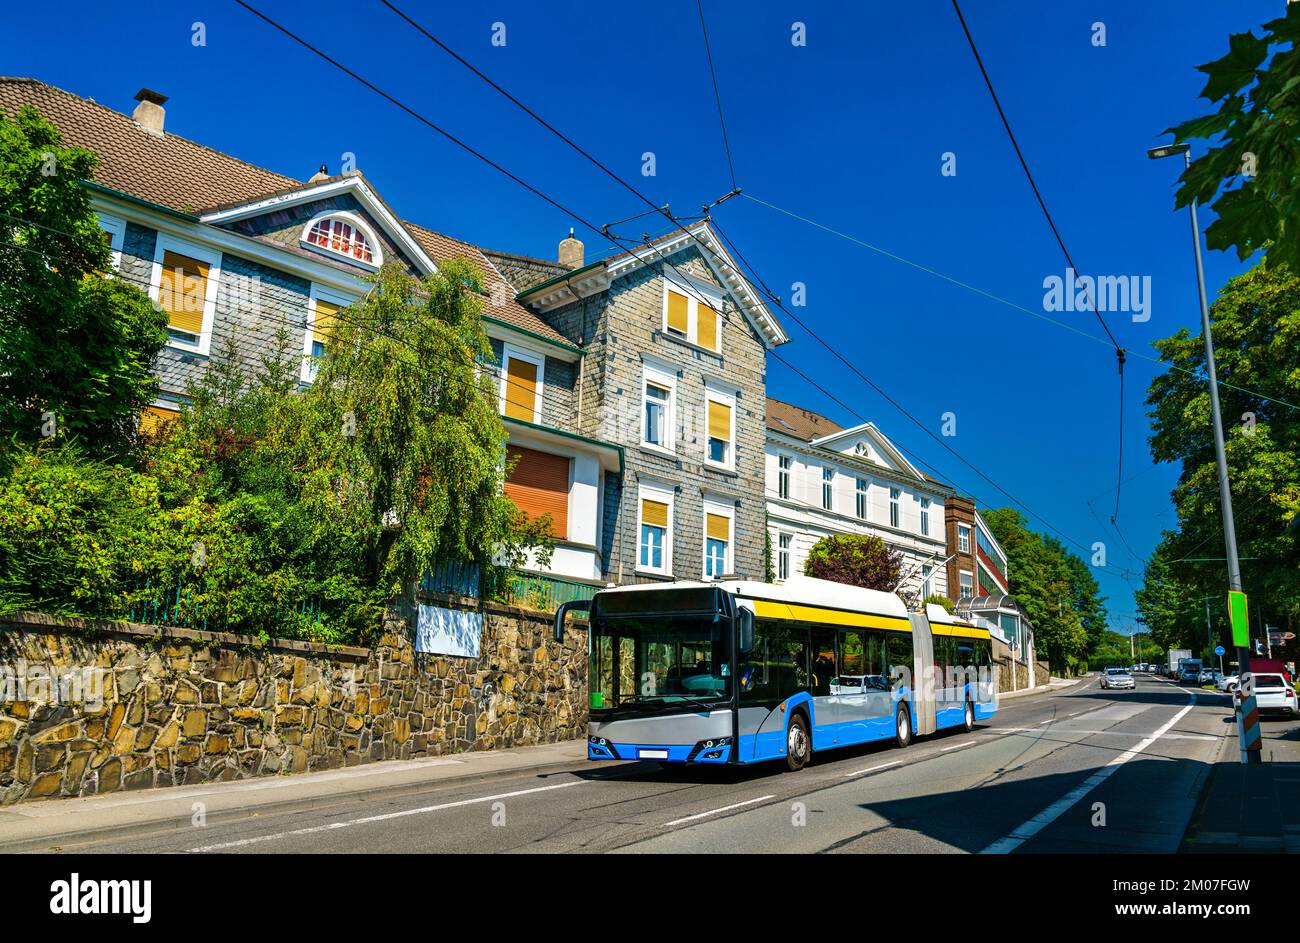 Bus électrique ou trolleybus à Solingen - Rhénanie-du-Nord-Westphalie, Allemagne Banque D'Images